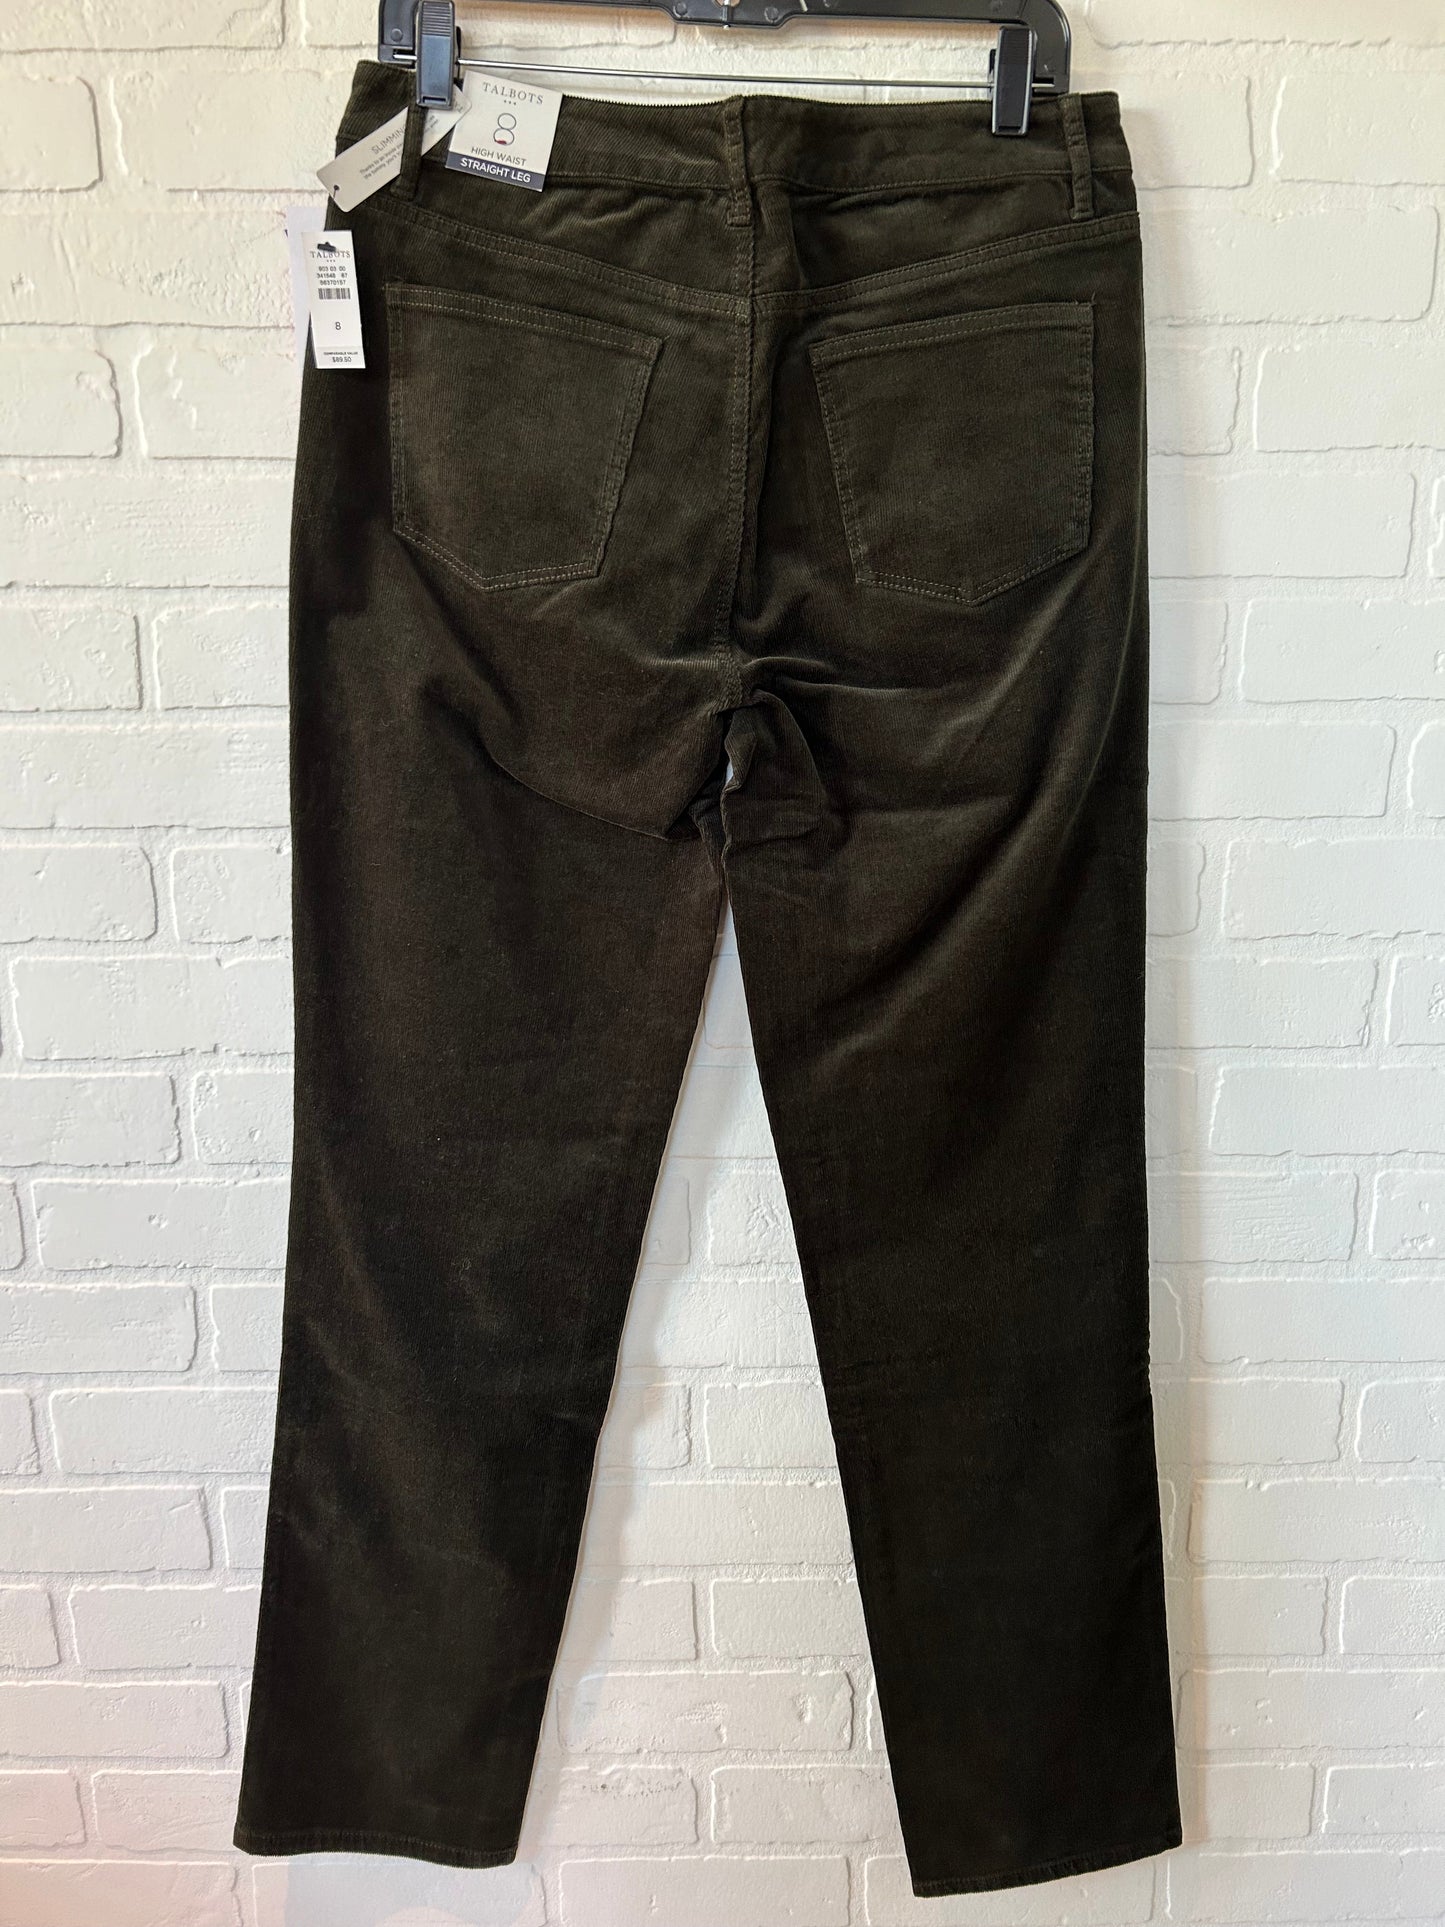 Green Pants Corduroy Talbots, Size 8